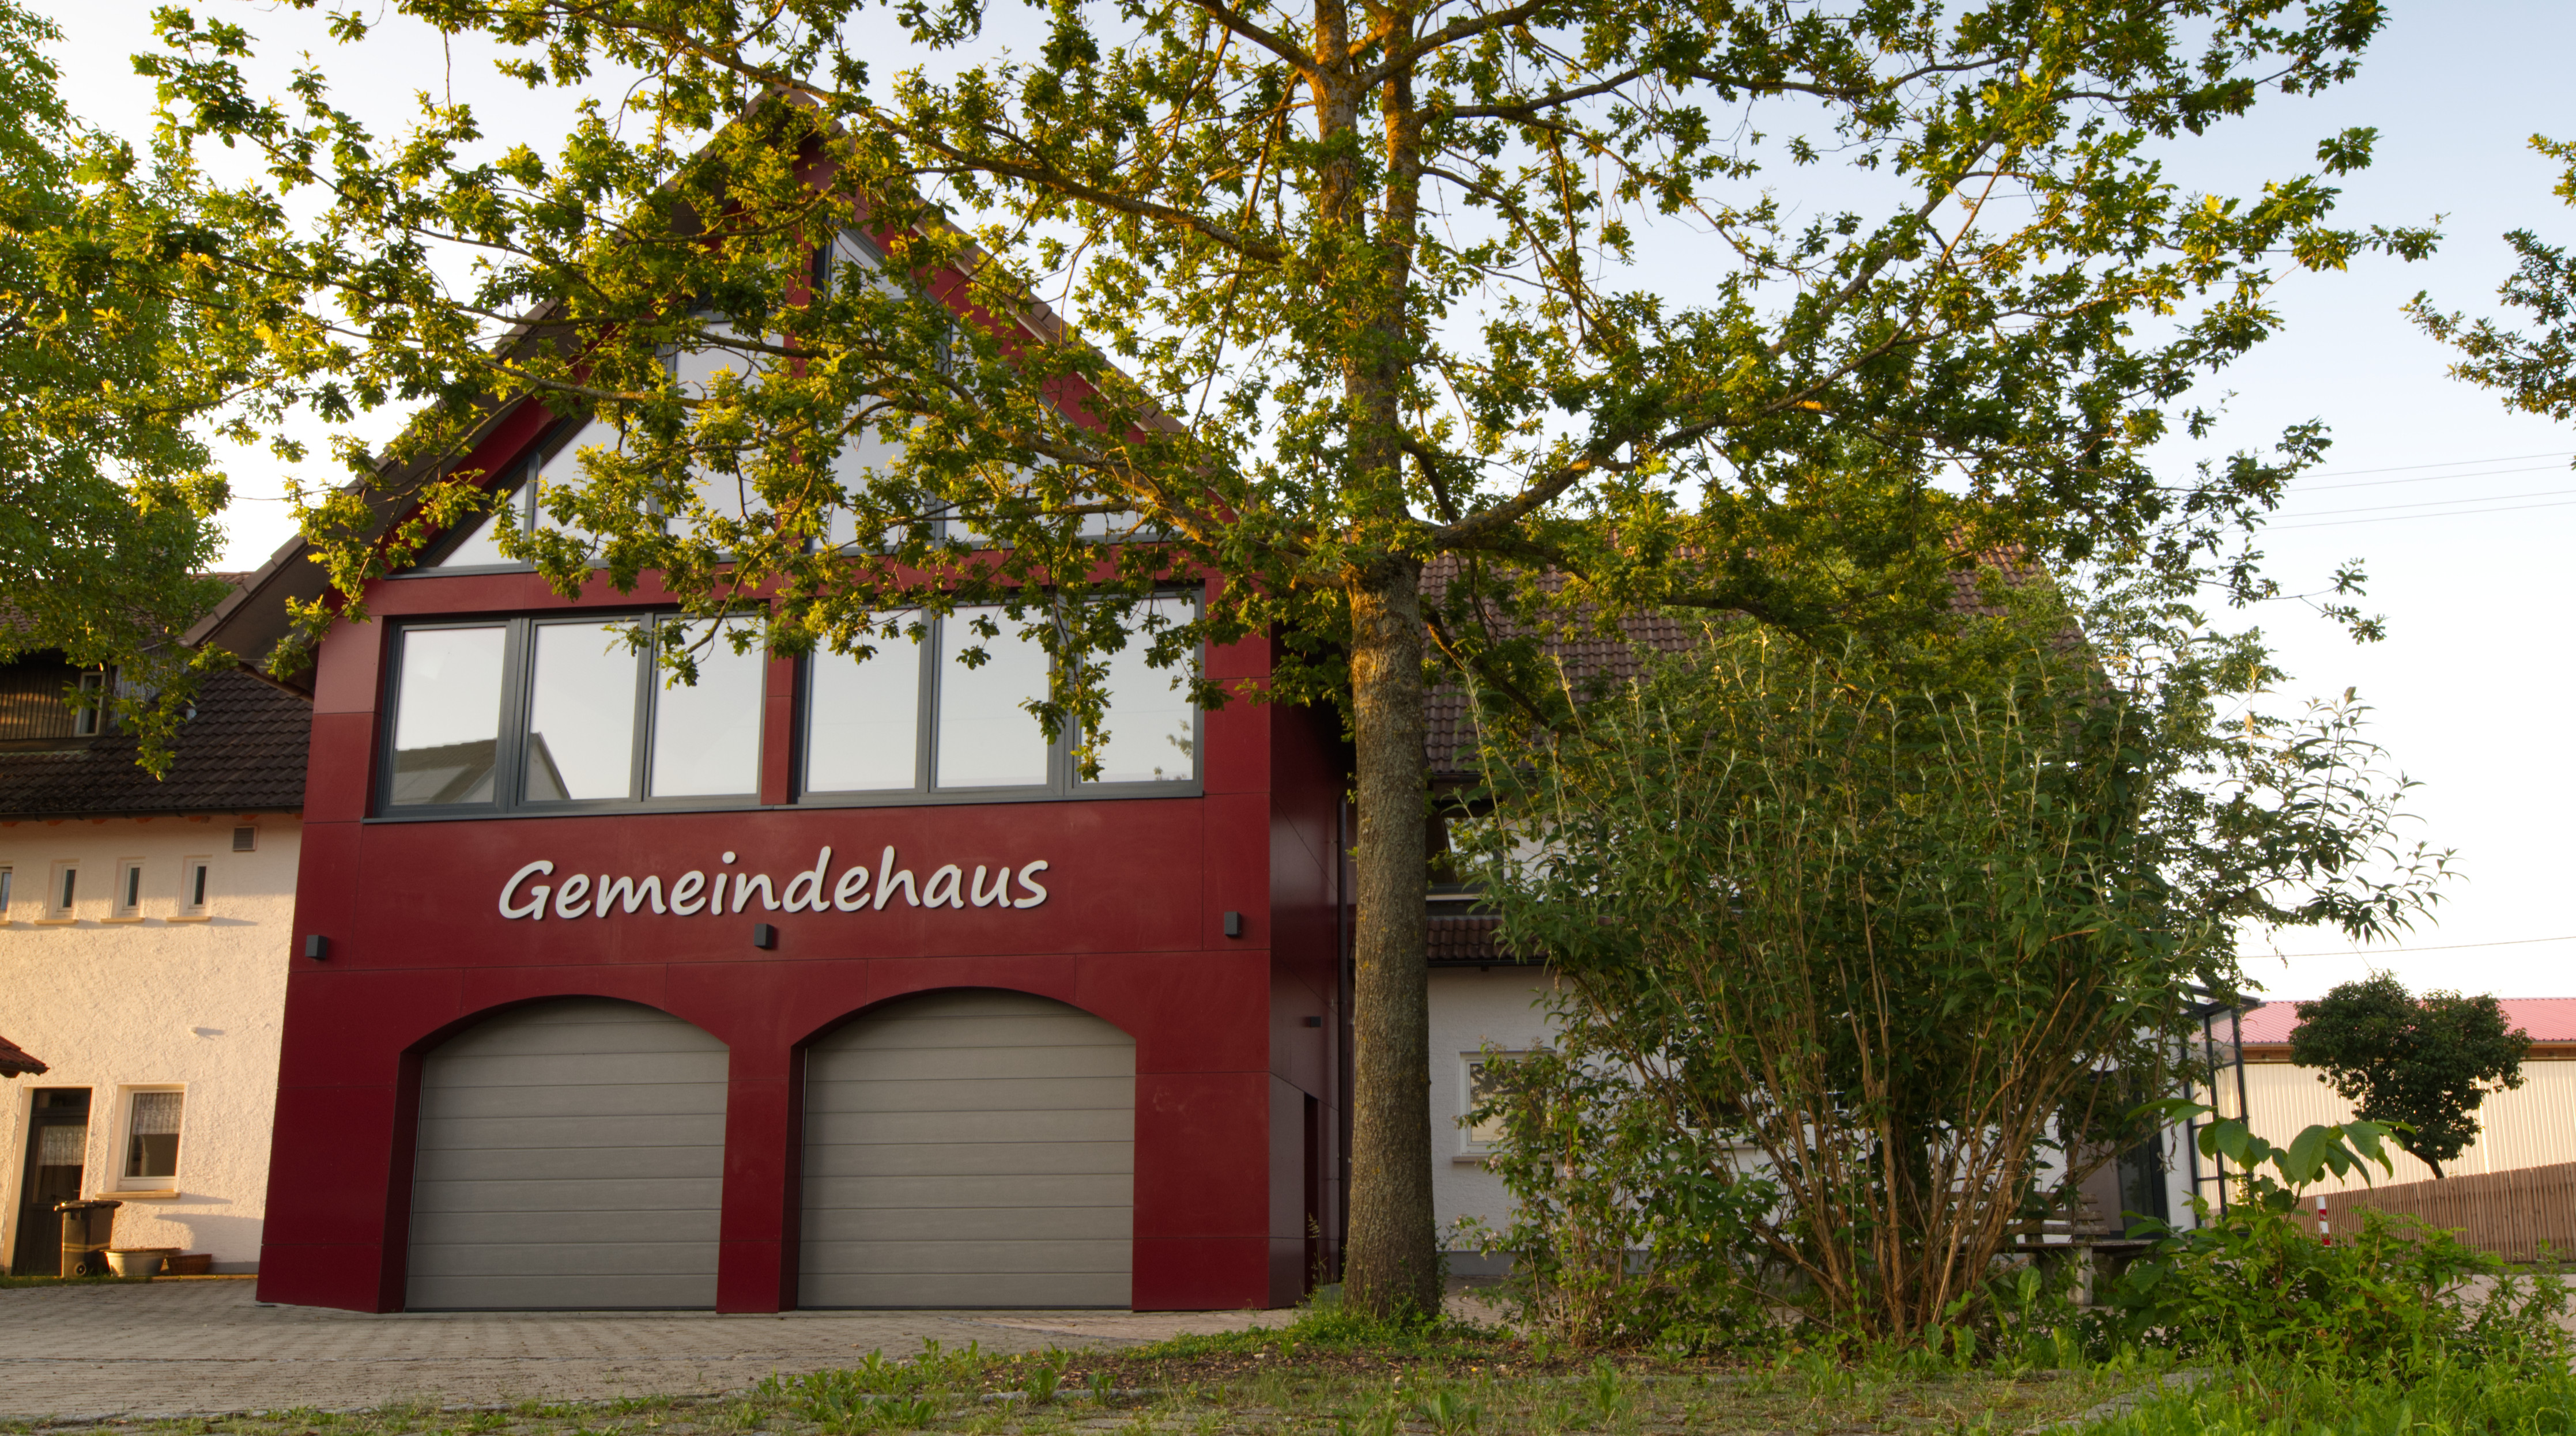 Gemeindehaus in Schnittlingen